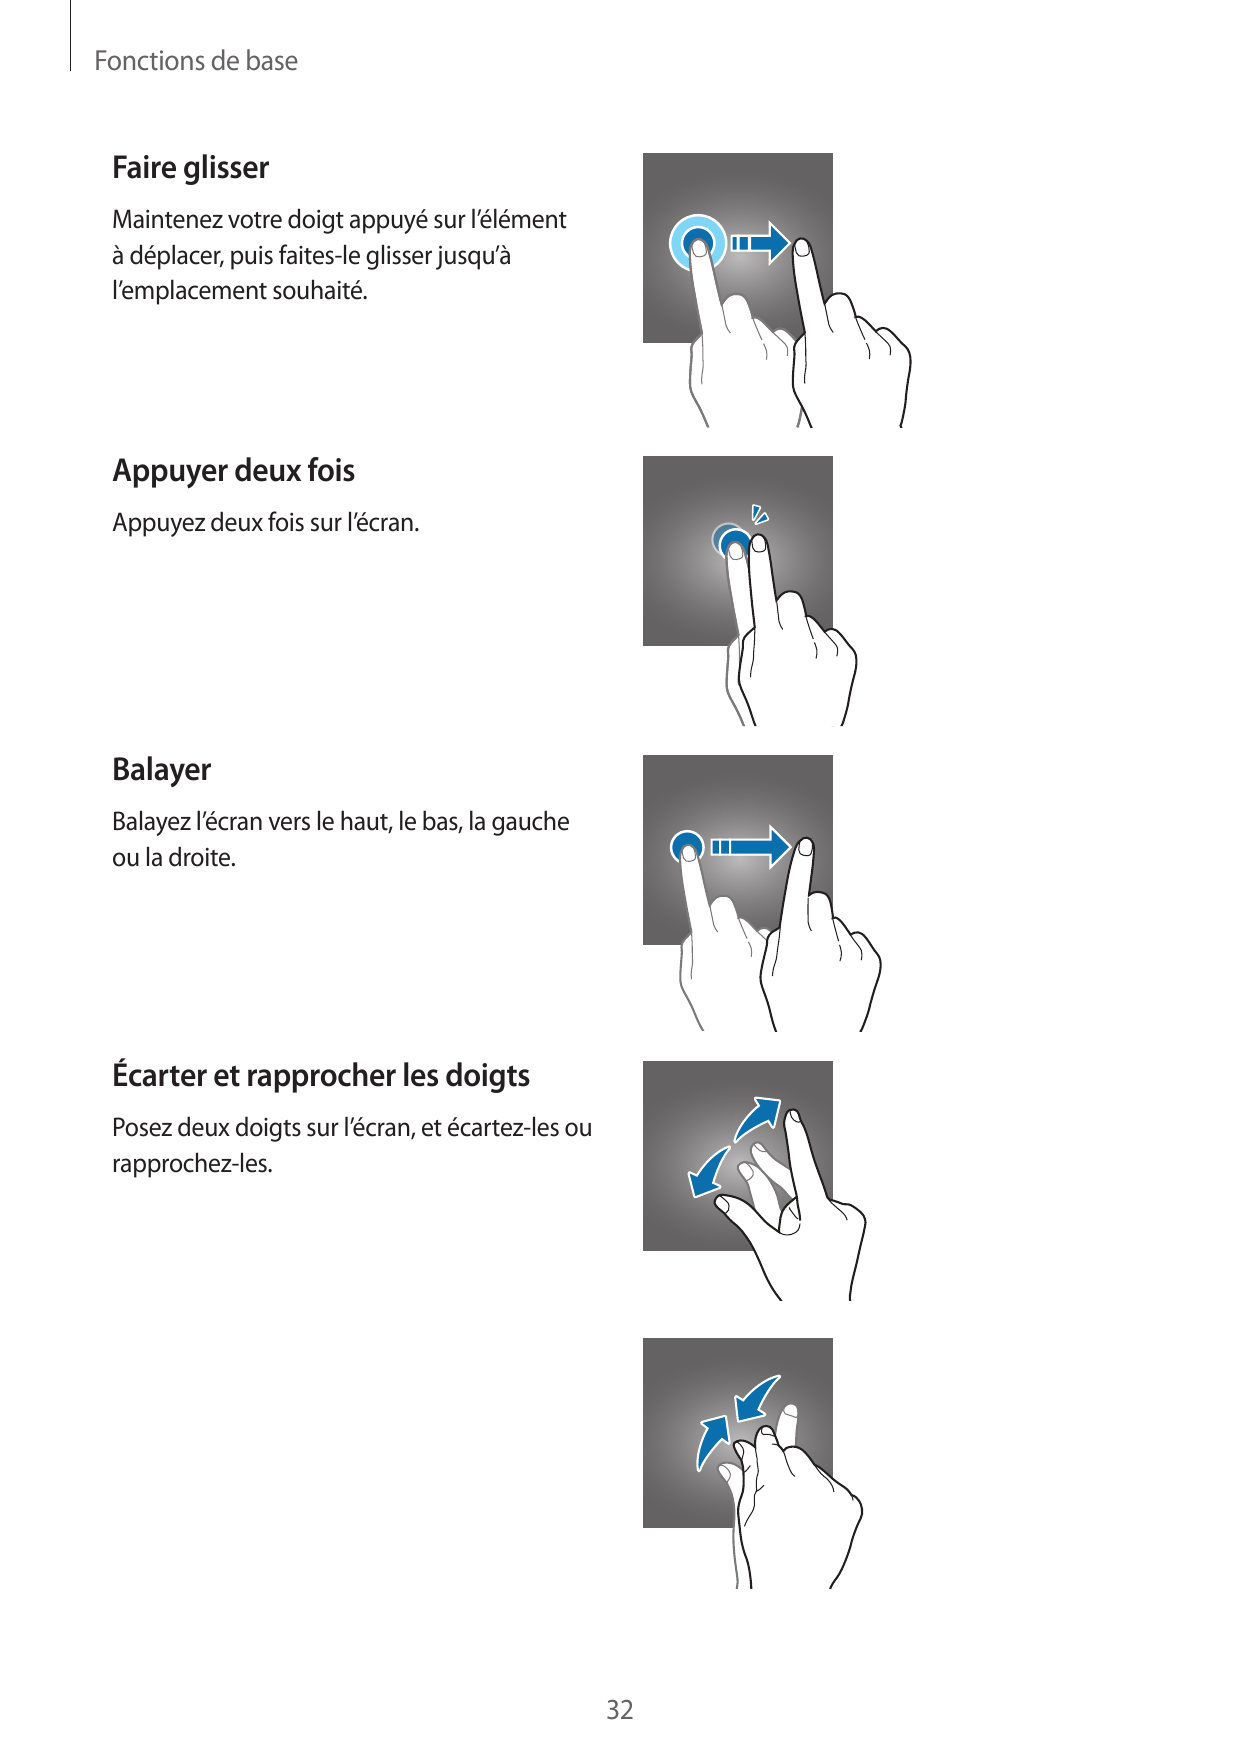 Fonctions de baseFaire glisserMaintenez votre doigt appuyé sur l’élémentà déplacer, puis faites-le glisser jusqu’àl’emplacement 